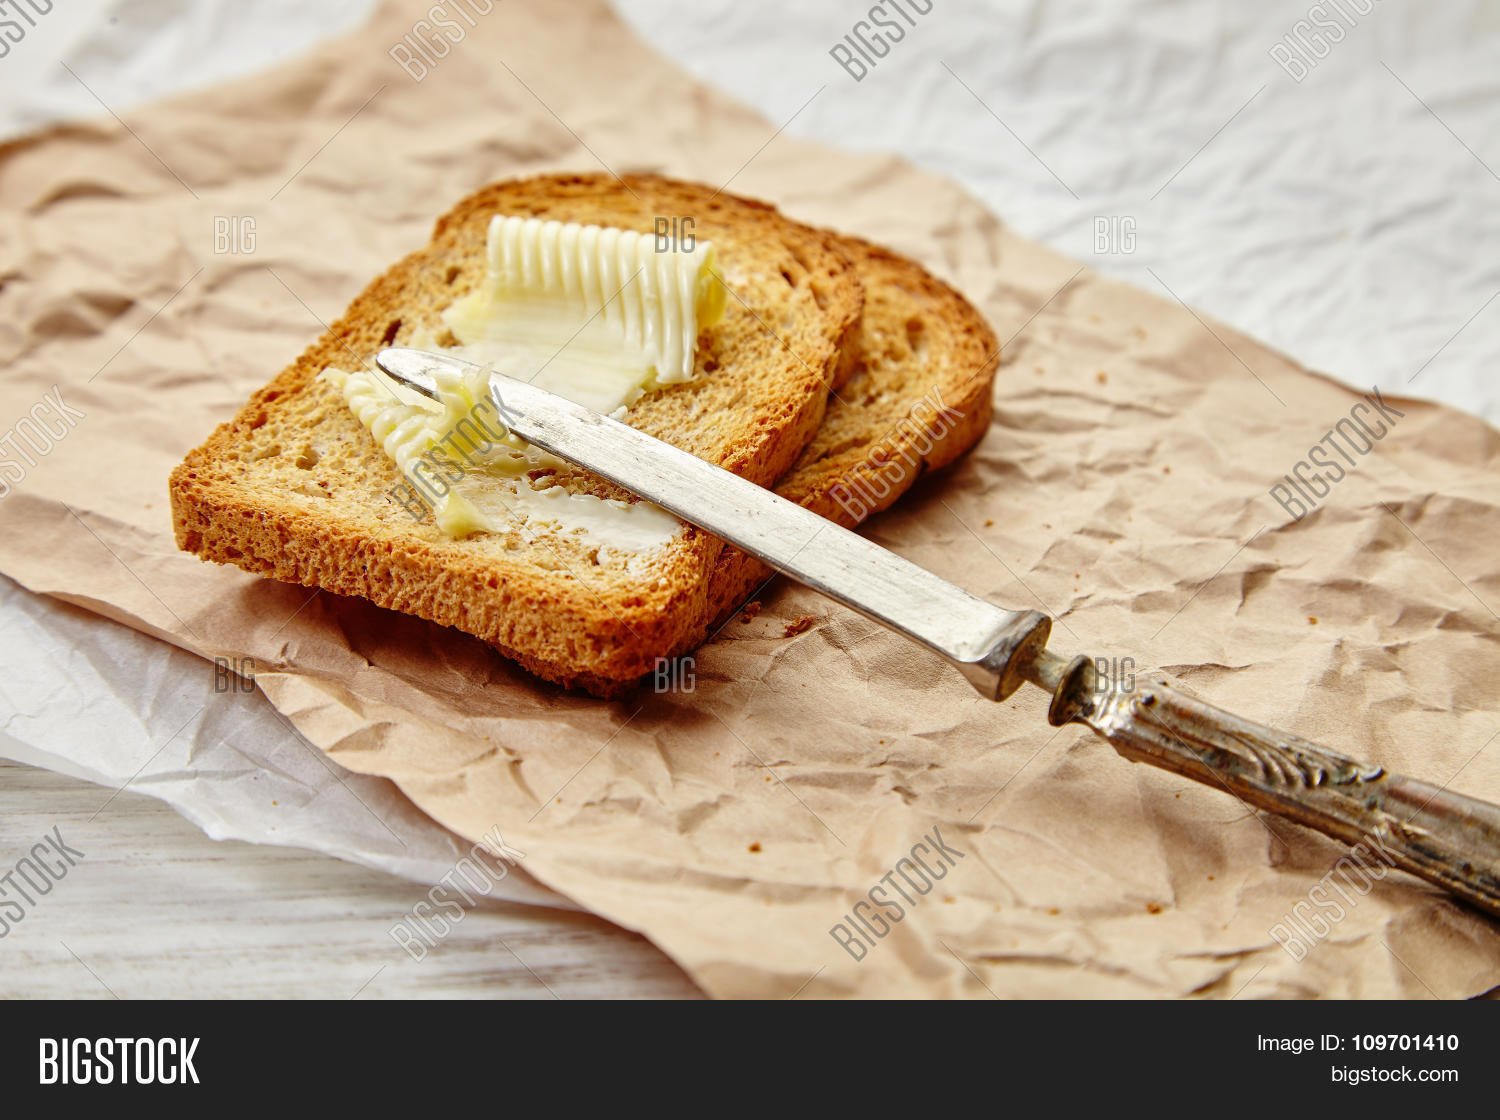 Сливочное масло на завтрак. Бутерброд с маслом. Хлеб с маслом. Сливочное масло на хлебе. Красивый бутерброд с маслом.